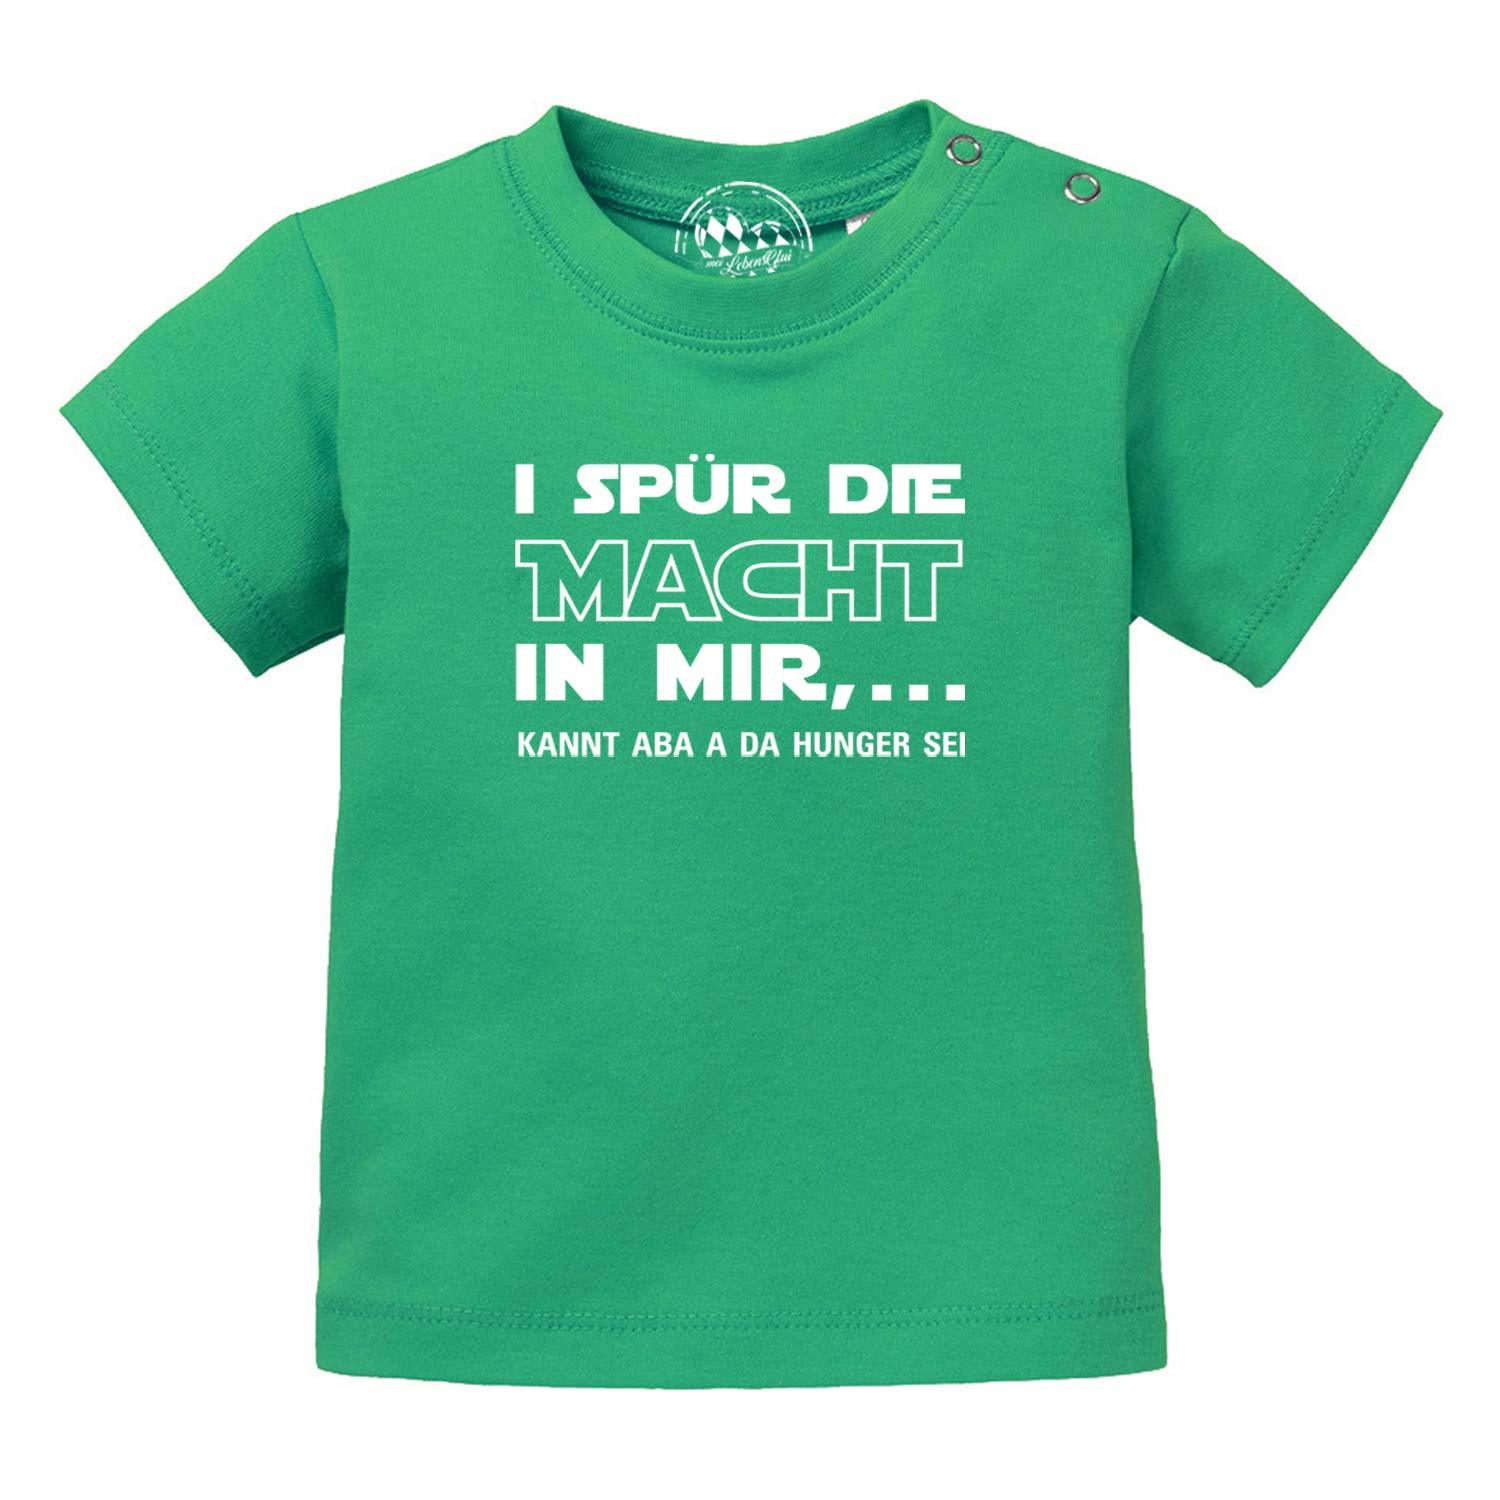 Baby T-Shirt "I spür die Macht…" - bavariashop - mei LebensGfui